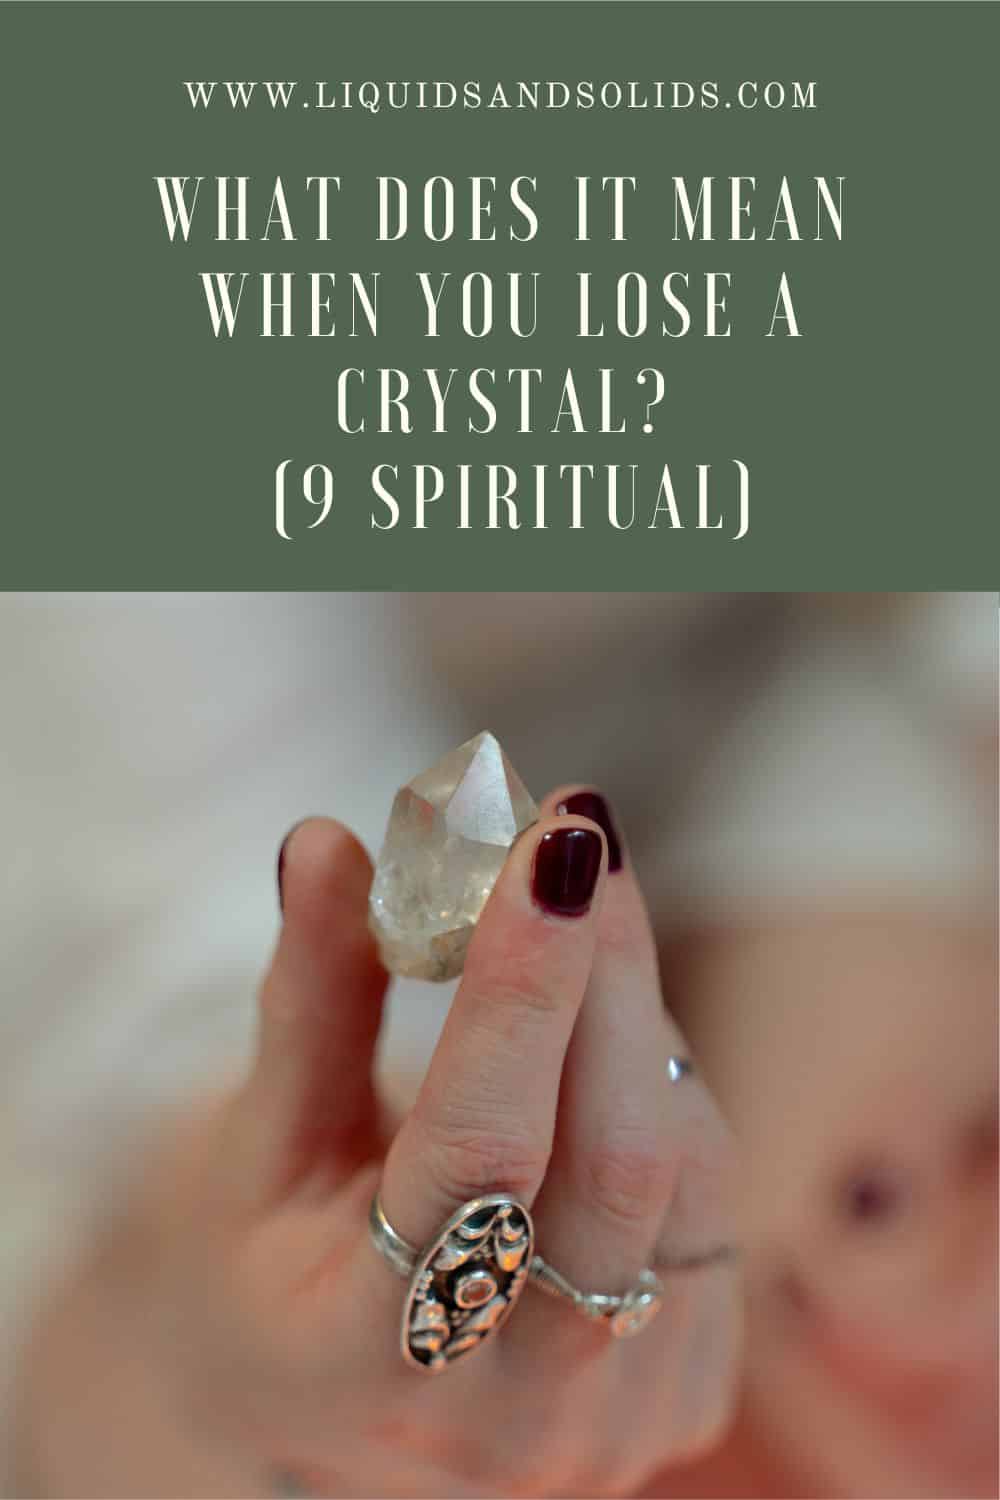  Ce que signifie la perte d'un cristal (9 significations spirituelles)